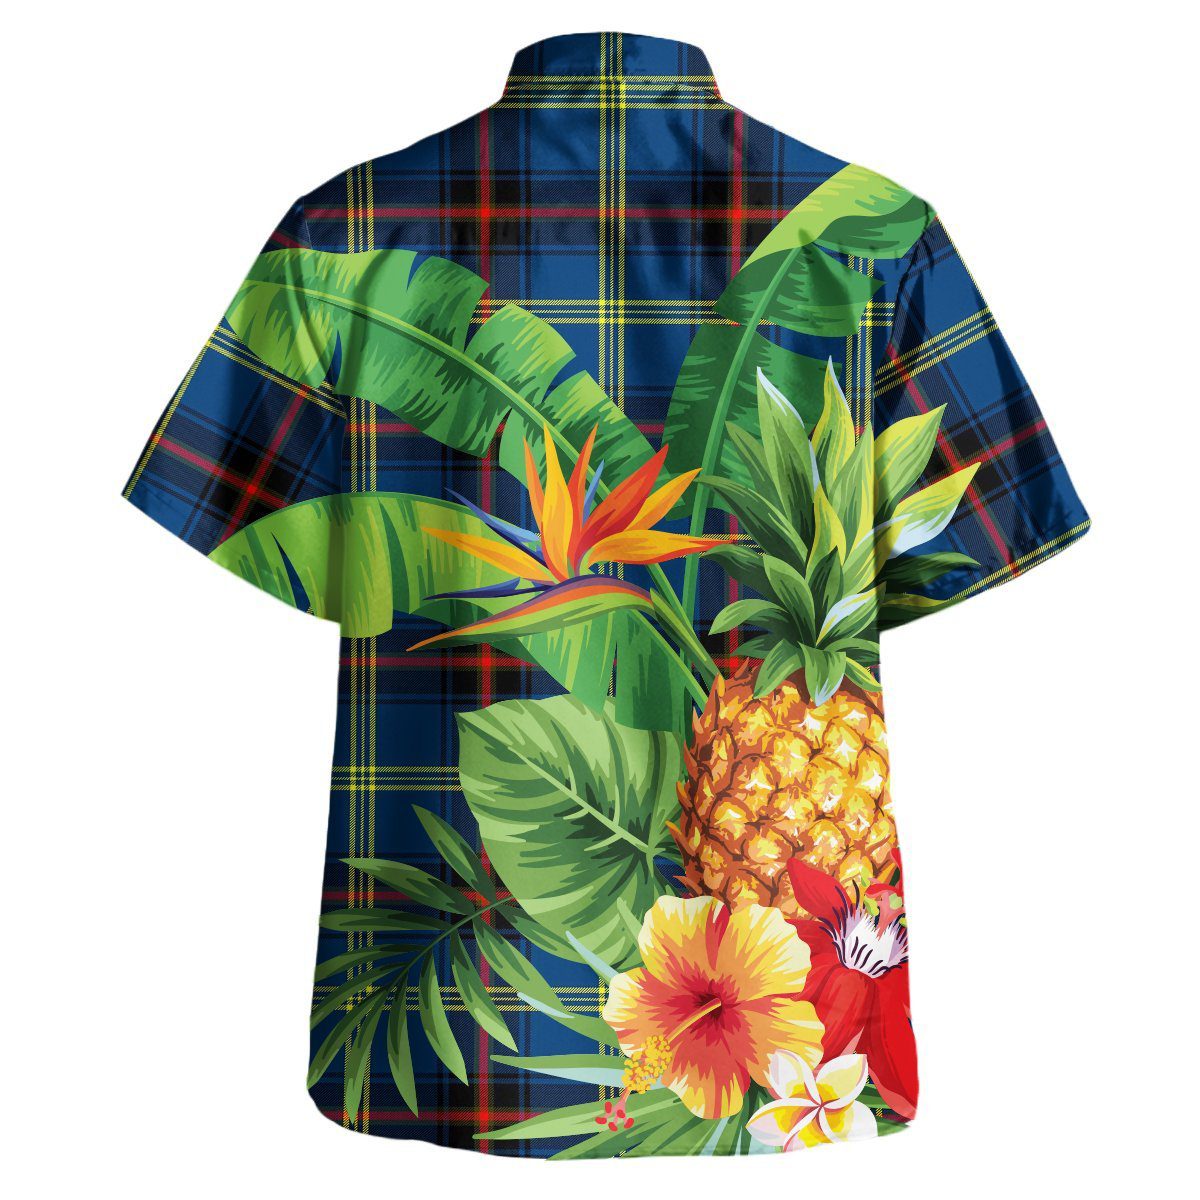 Grewar Tartan Aloha Shirt version 2